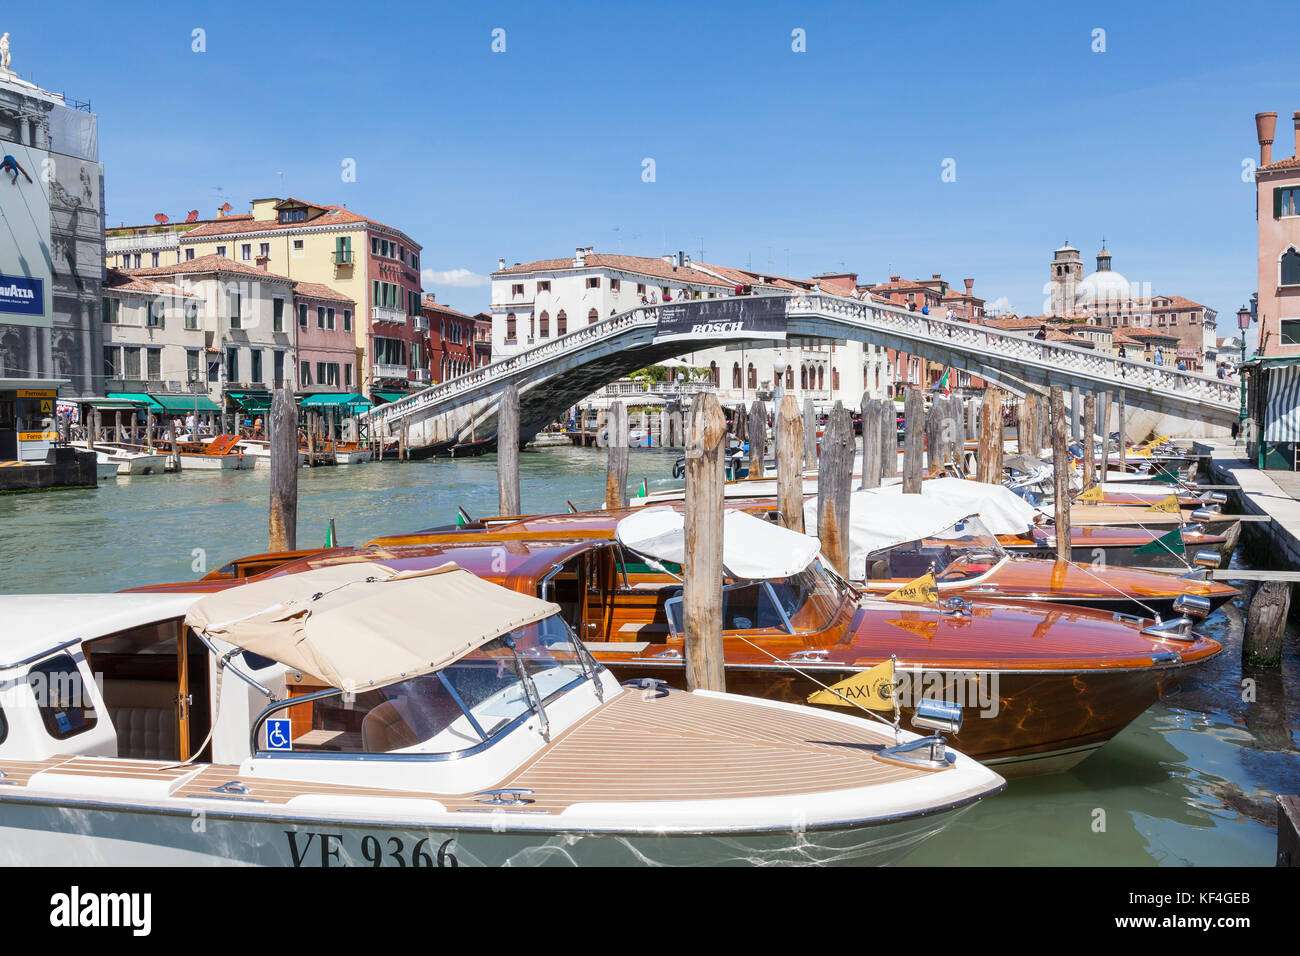 Les taxis de l'eau mouillée dans le Grand Canal, Venise, Italie près de l'Scolzi Bridge, Santa Croce. Ces bateaux sont directement en face de la gare ferrovia stat Banque D'Images